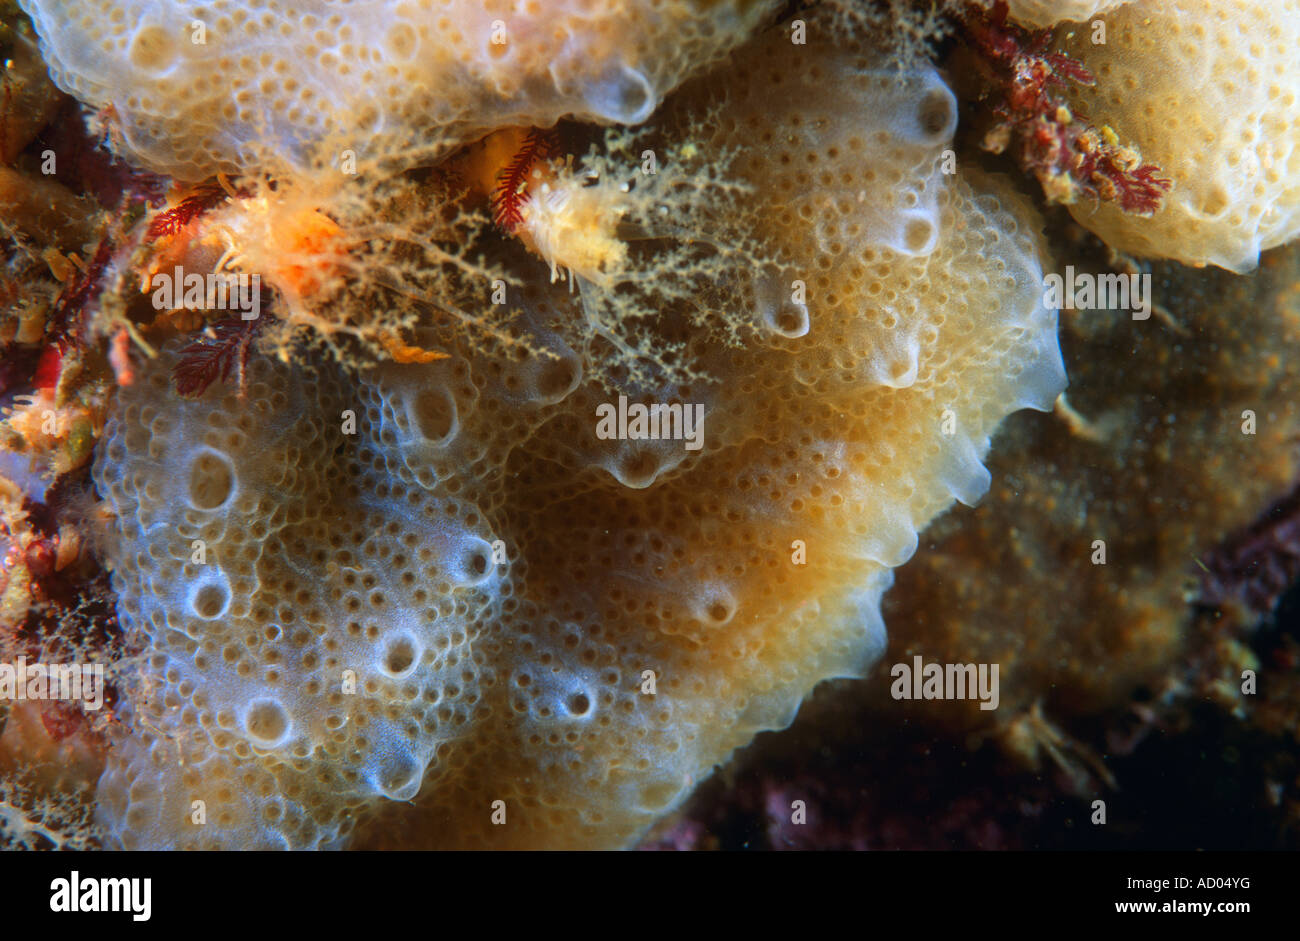 Closeup of colonial sea squirt ascidian Ascidiacea Aplidium glabrum common in north Atlantic and Pacific oceans Underwater Stock Photo